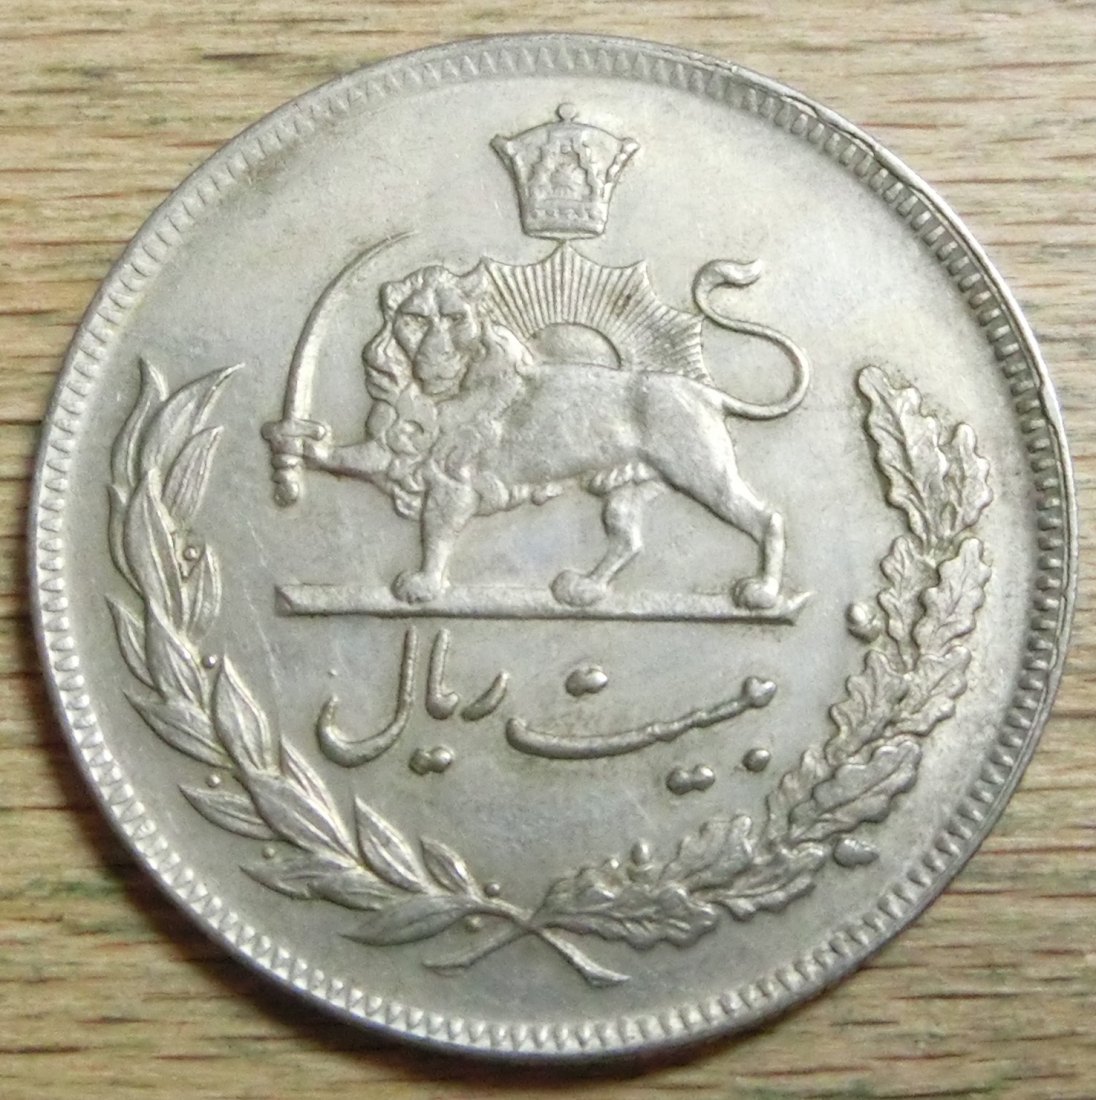  Iran 20  Rials  1351   